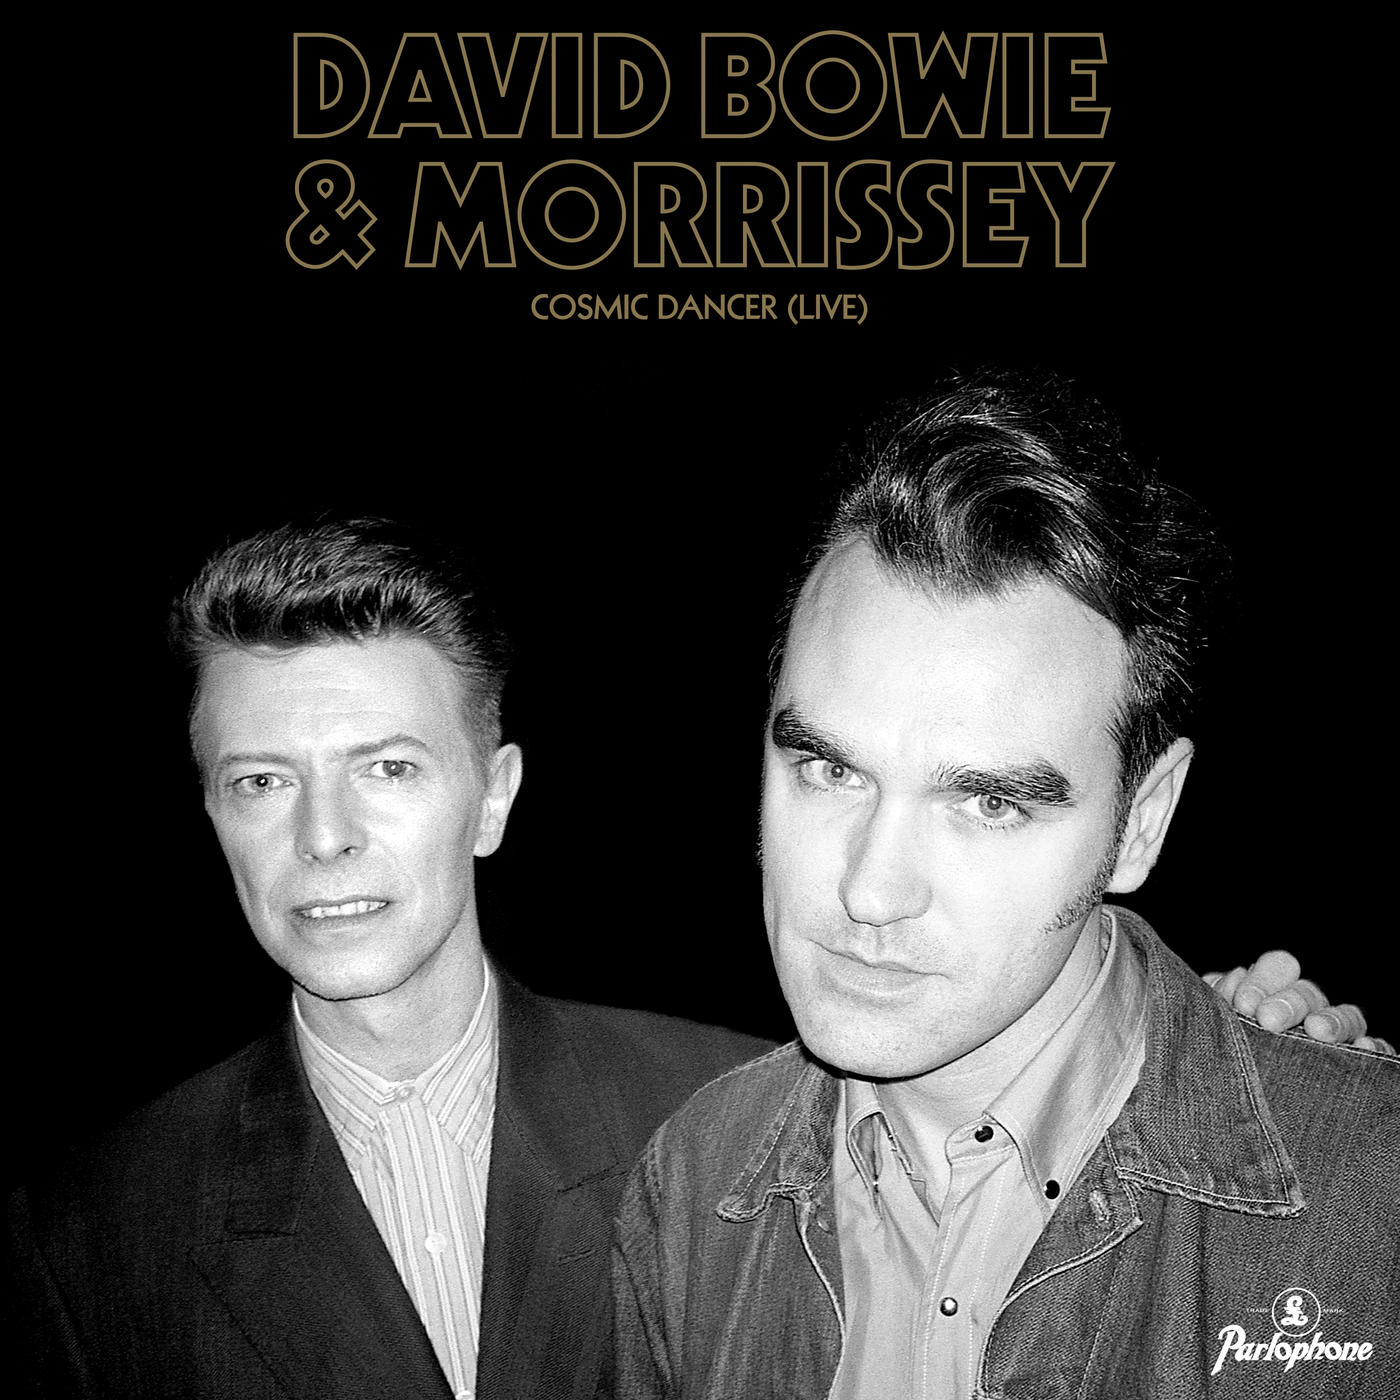 DAVID BOWIE & MORRISSEY - COSMIC DANCER (LIVE) Vinyl 7"